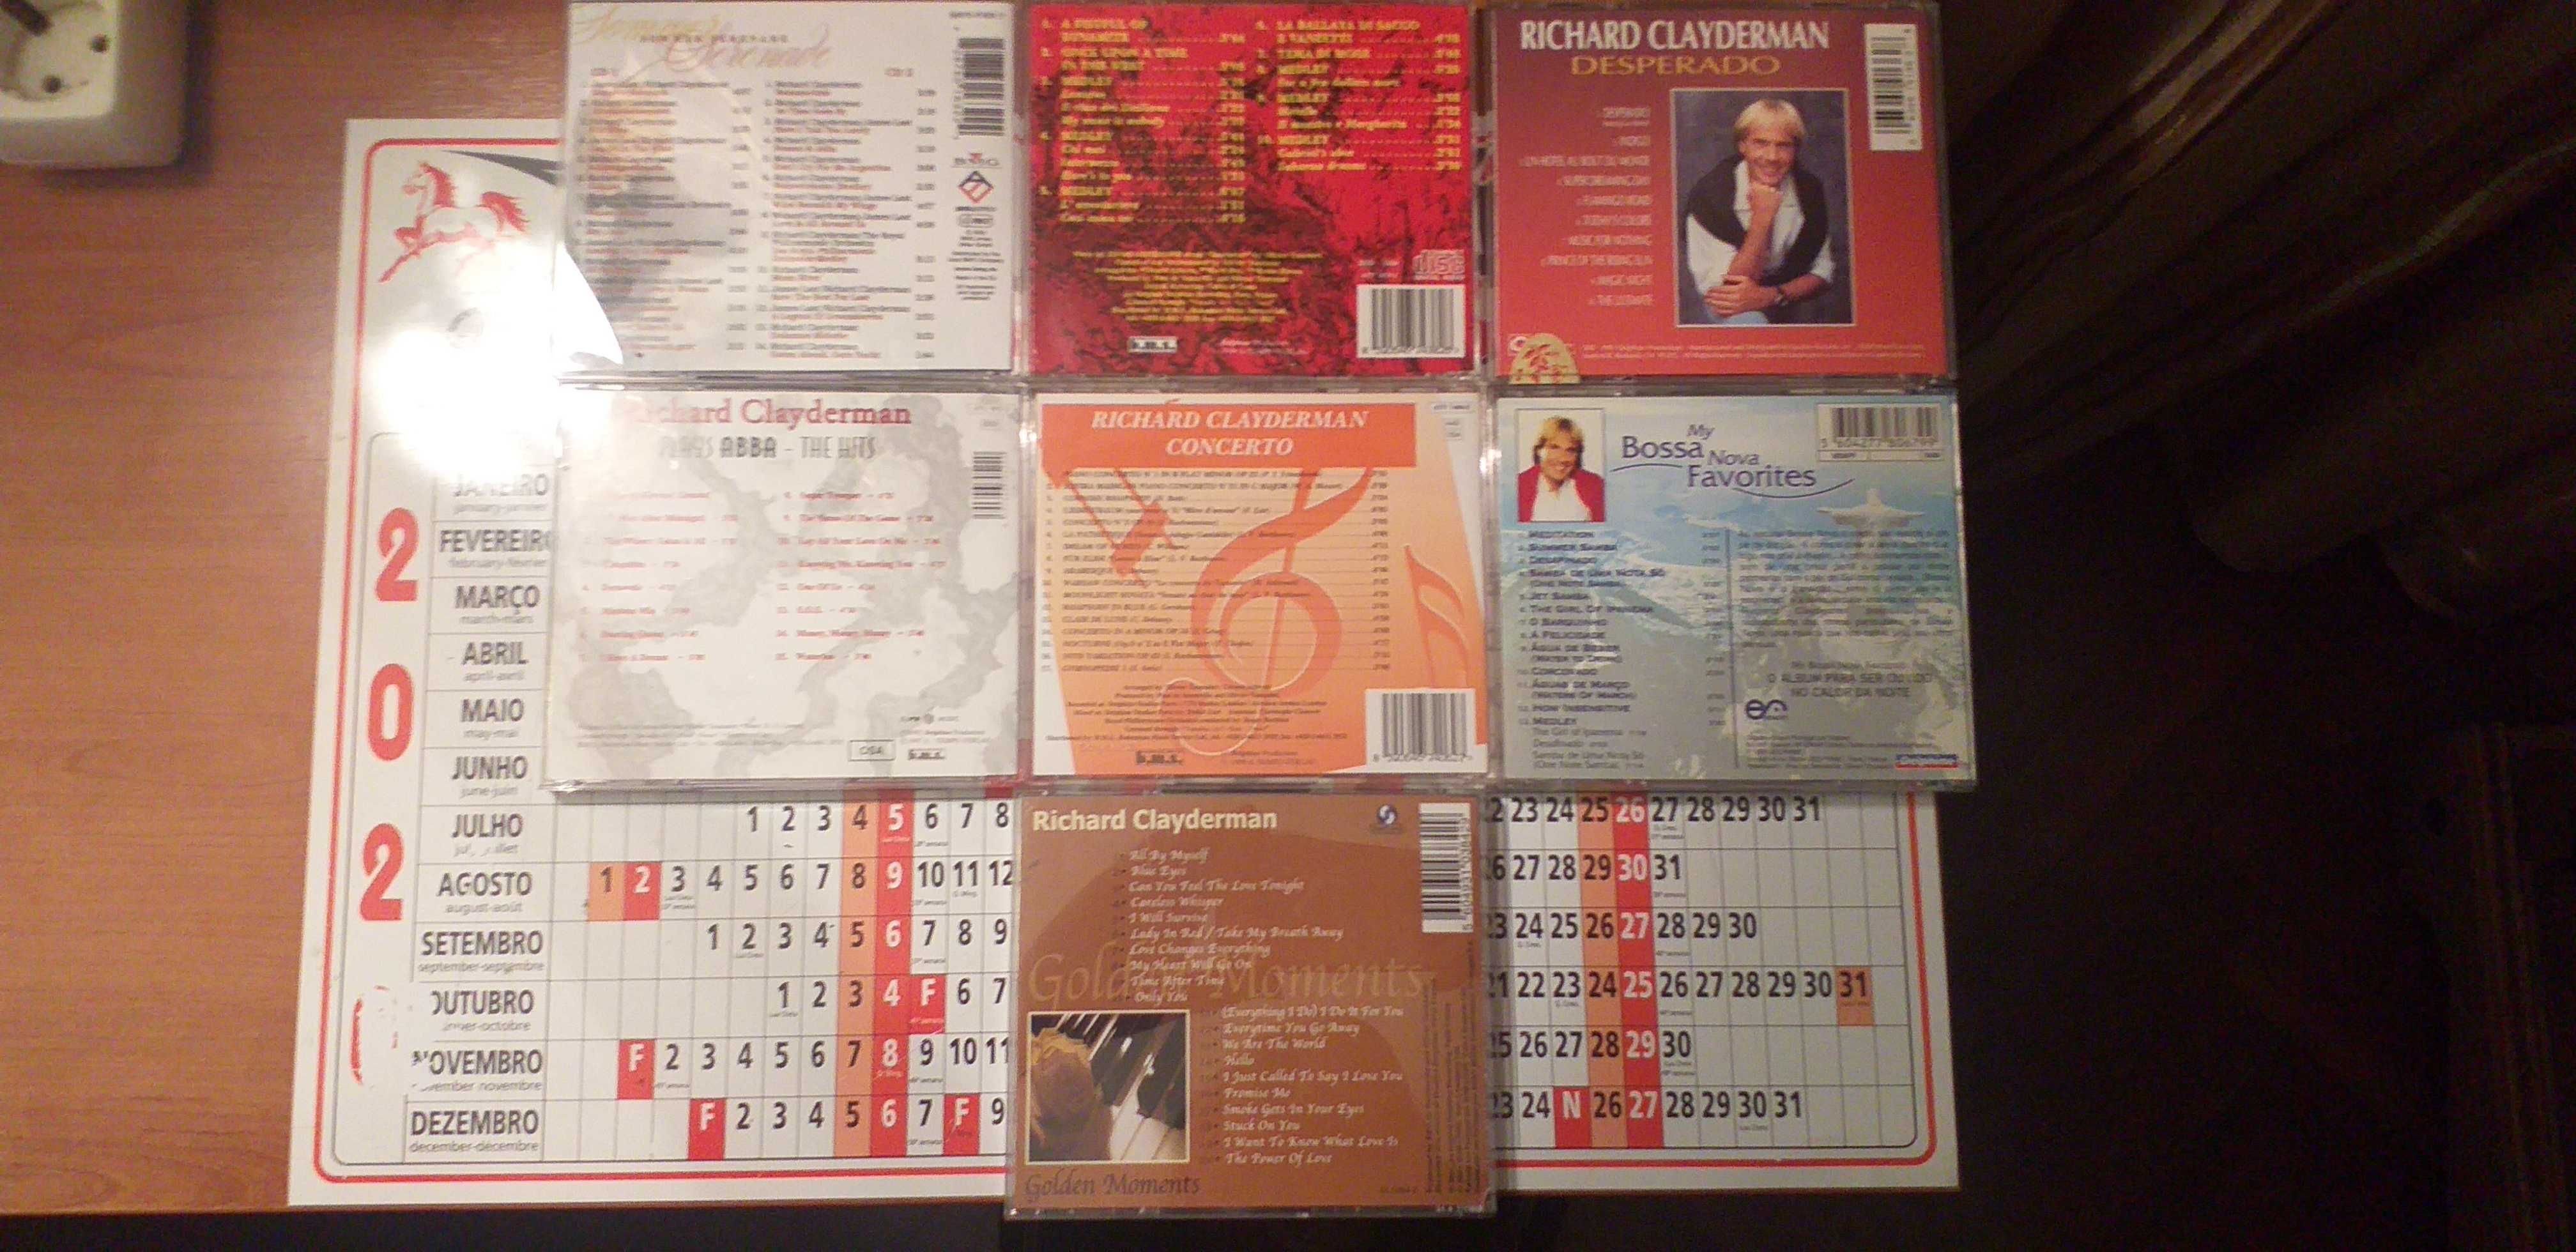 7 cds de Richard clayderman originais a bom preço.